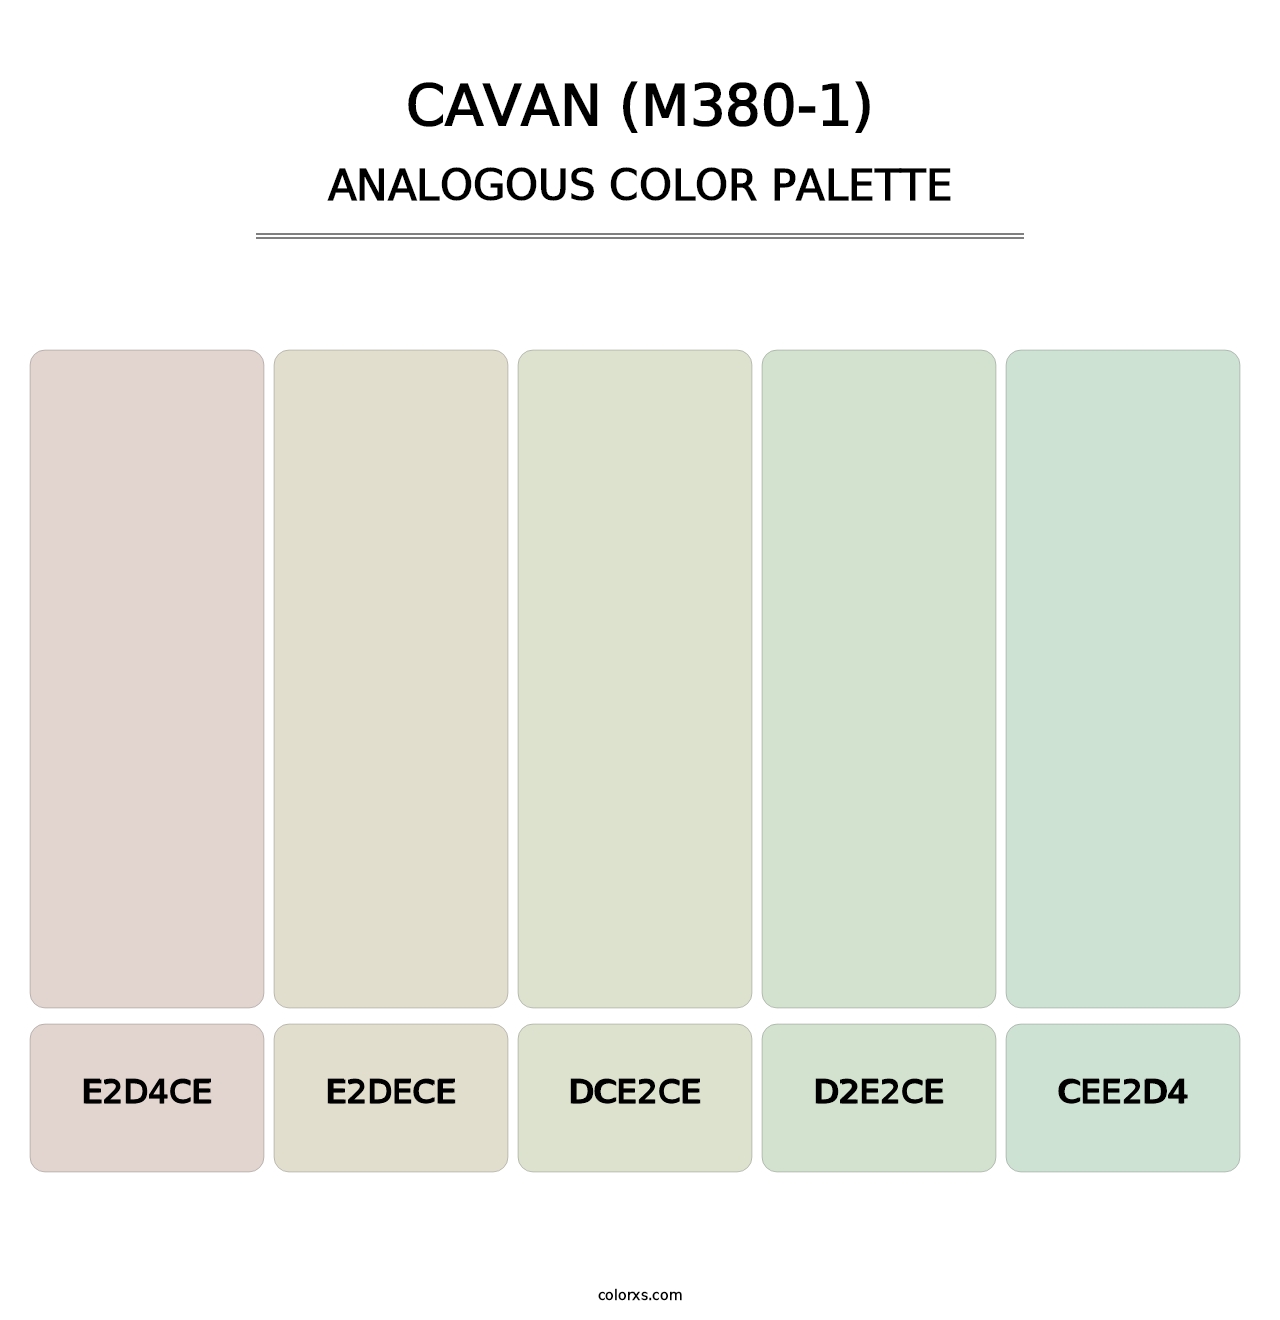 Cavan (M380-1) - Analogous Color Palette